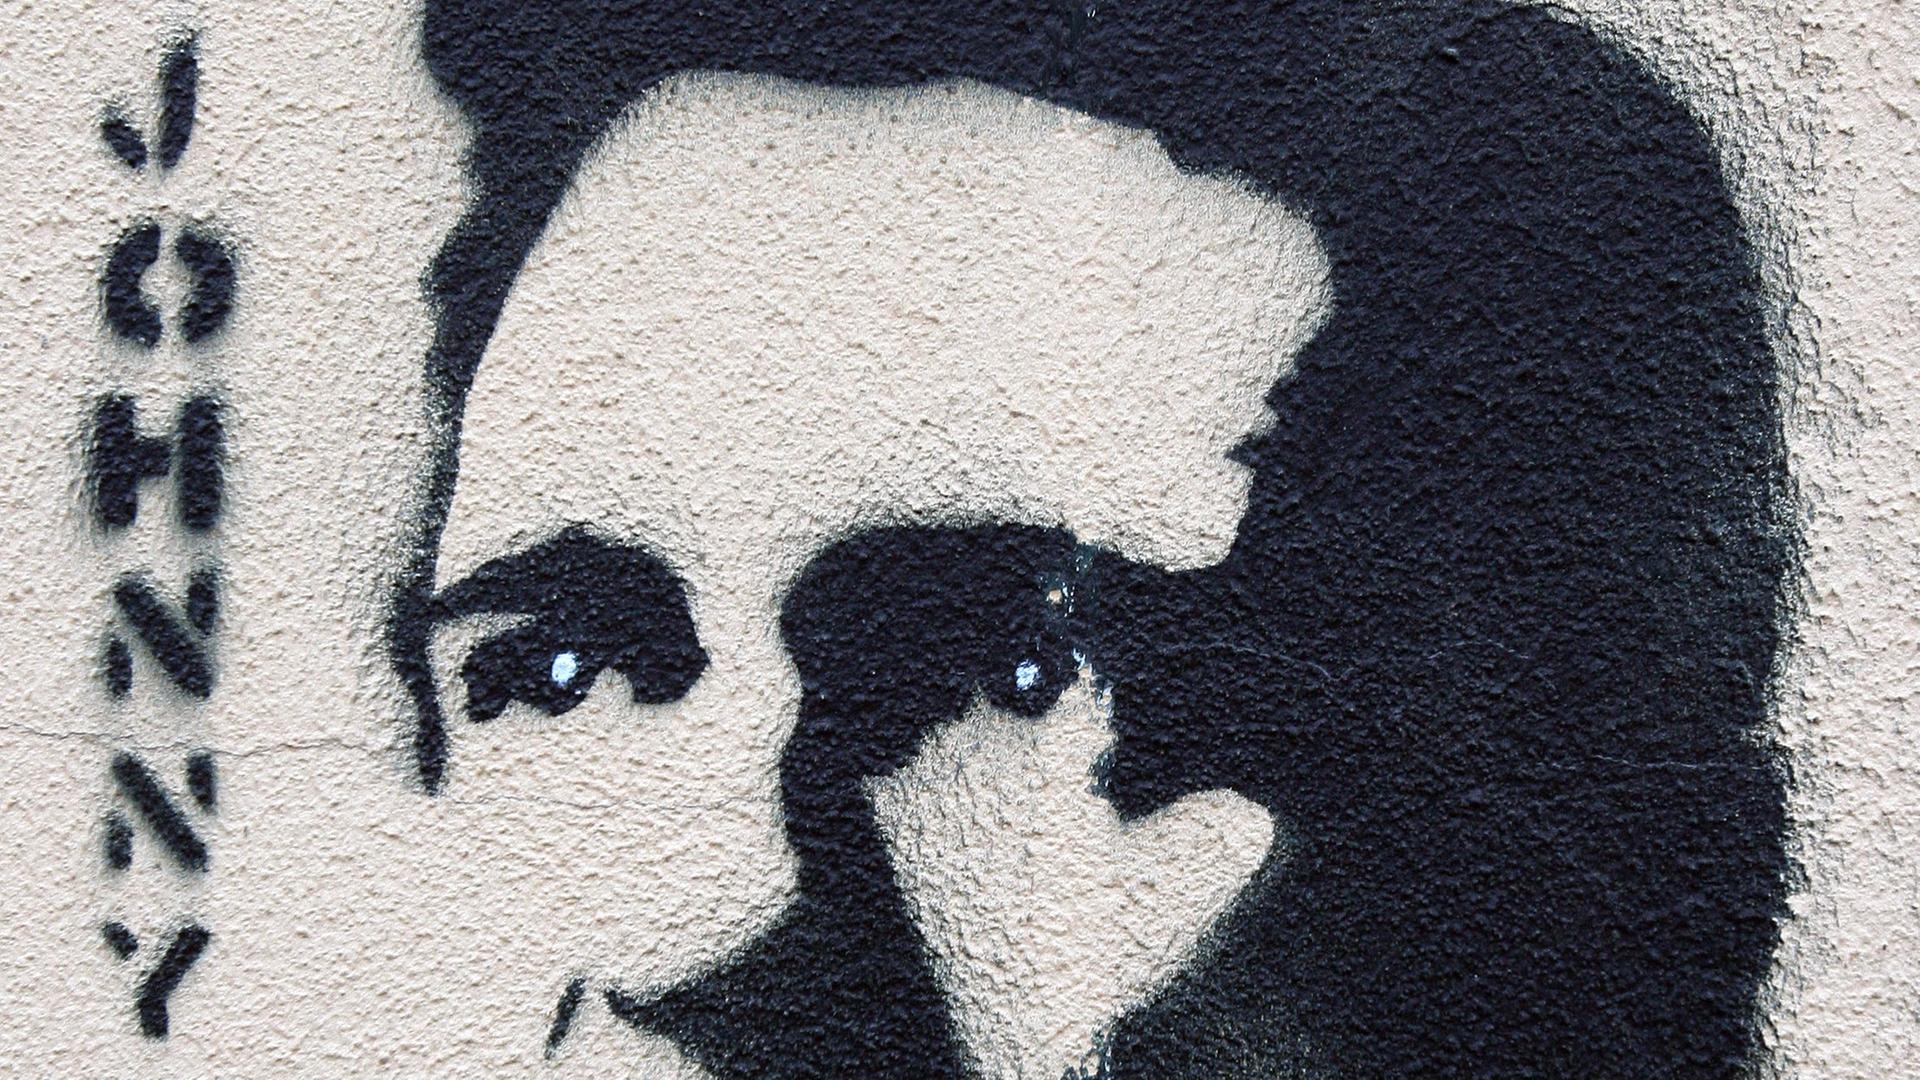 Ein Graffiti mit dem Abbild von Johnny Cash an einer Häuserwand in Berlin. Links steht "Johnny".